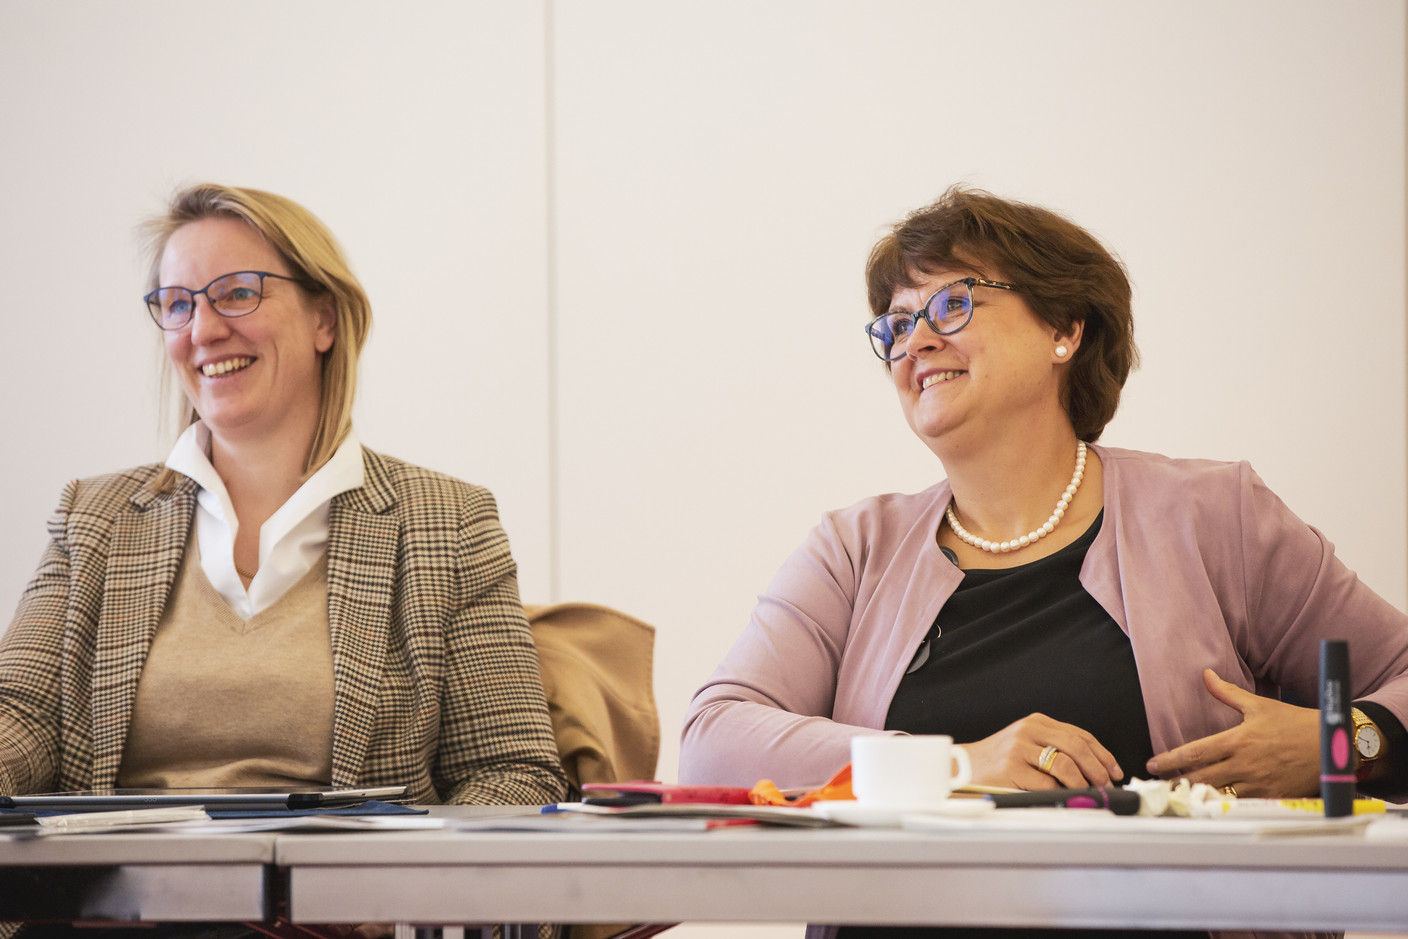 Agnès Laruelle (MDO Management Company) à droite (Photo: Jan Hanrion / Maison Moderne)